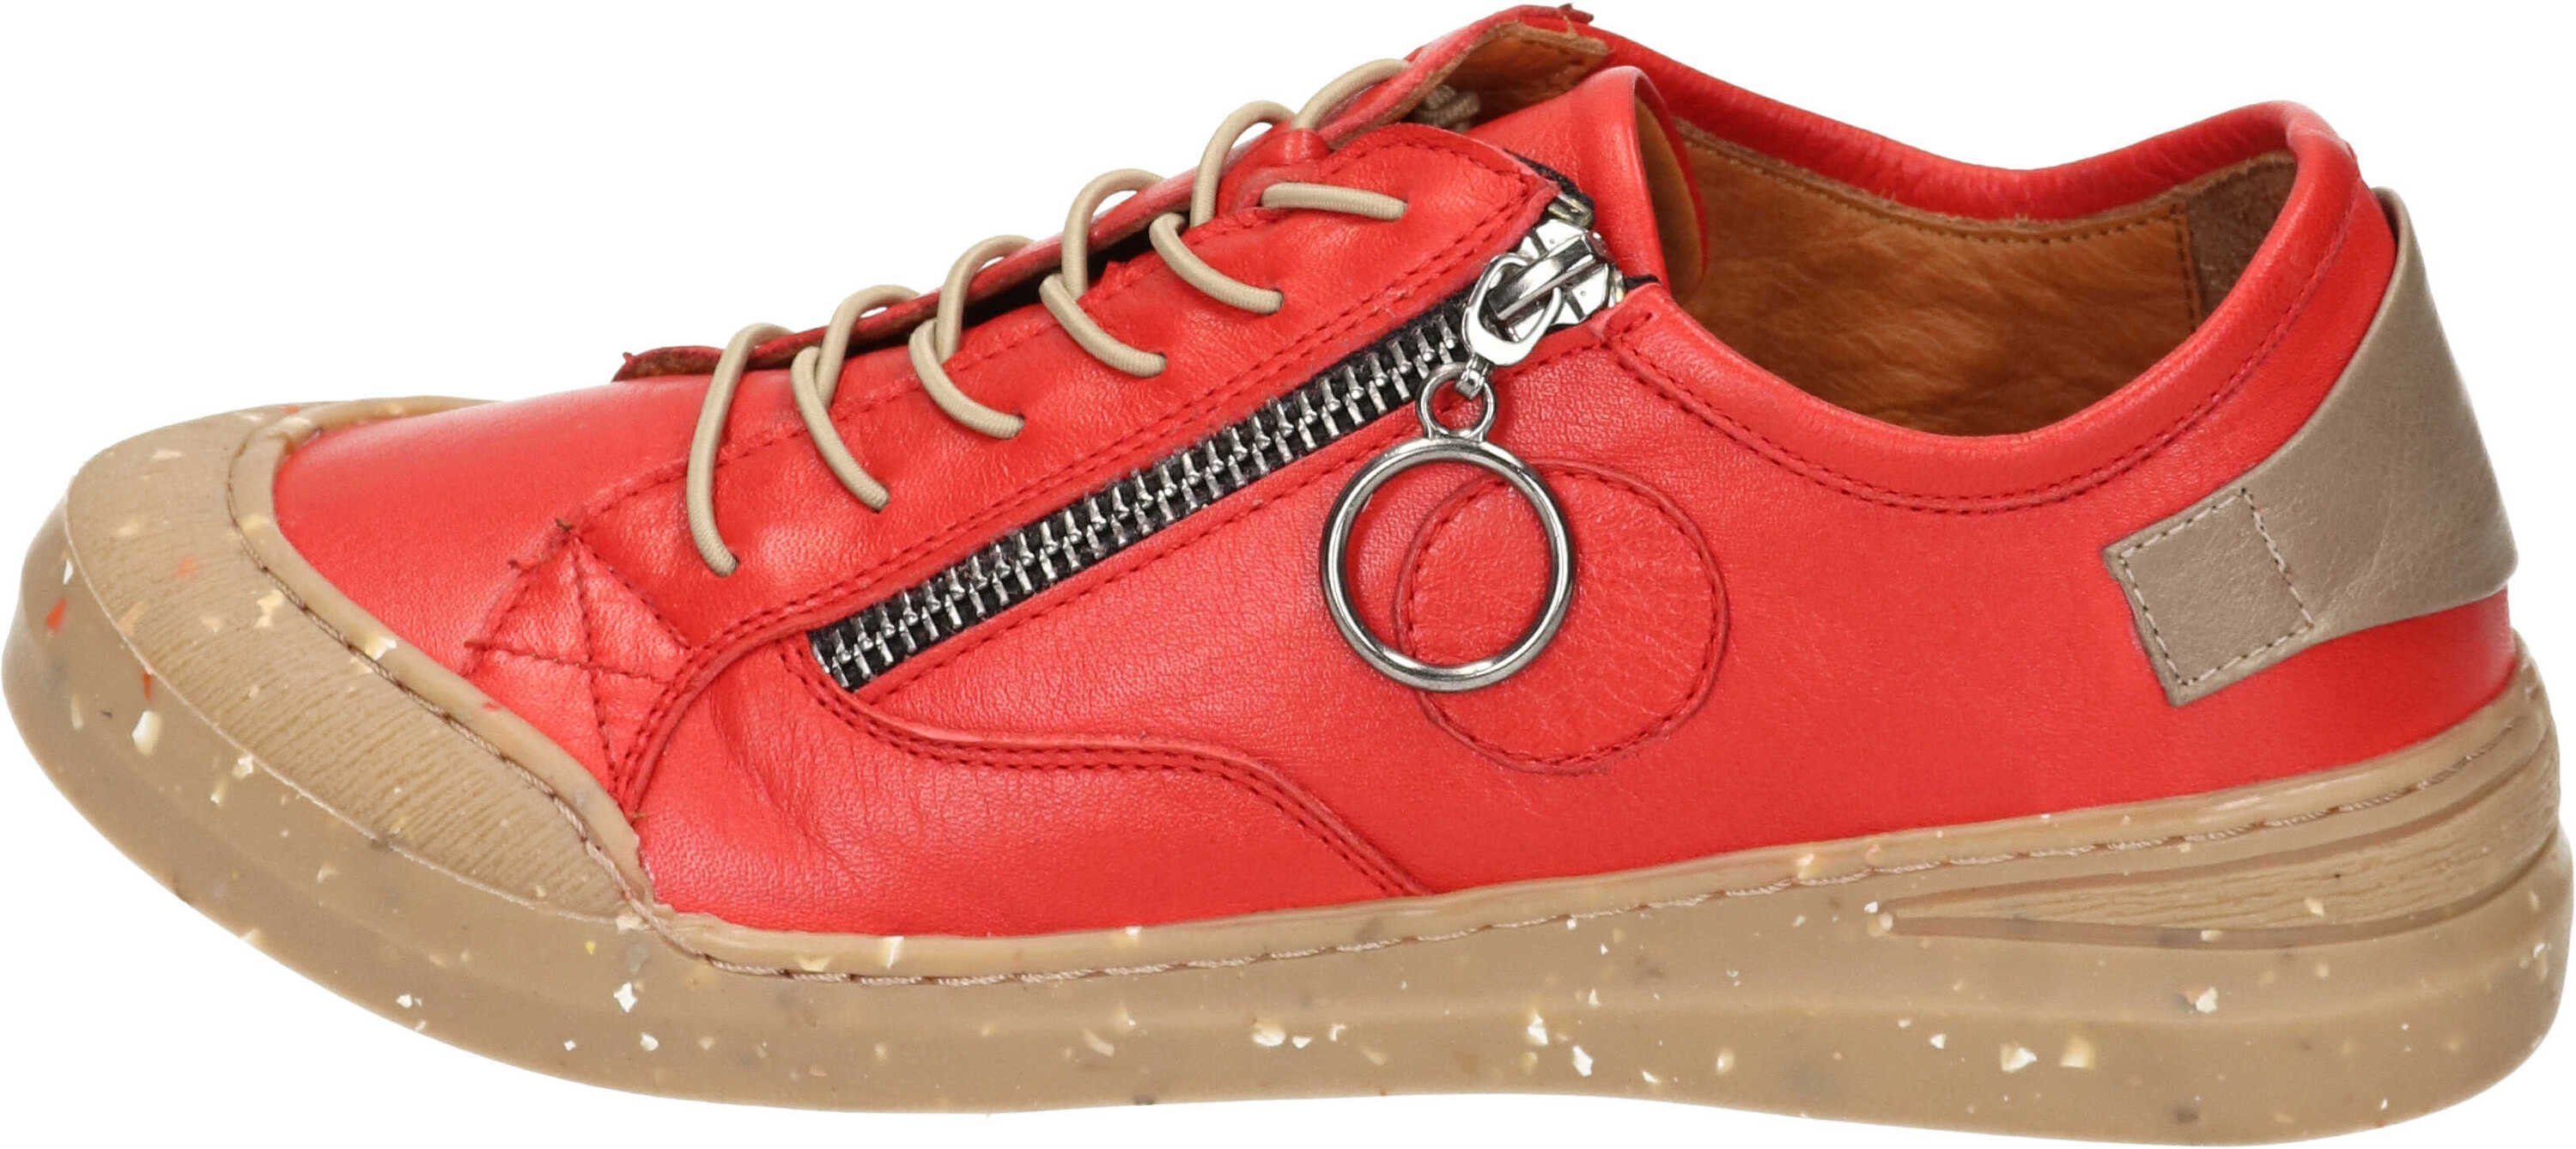 Sneaker aus echtem Manitu rot Schnürschuh Leder